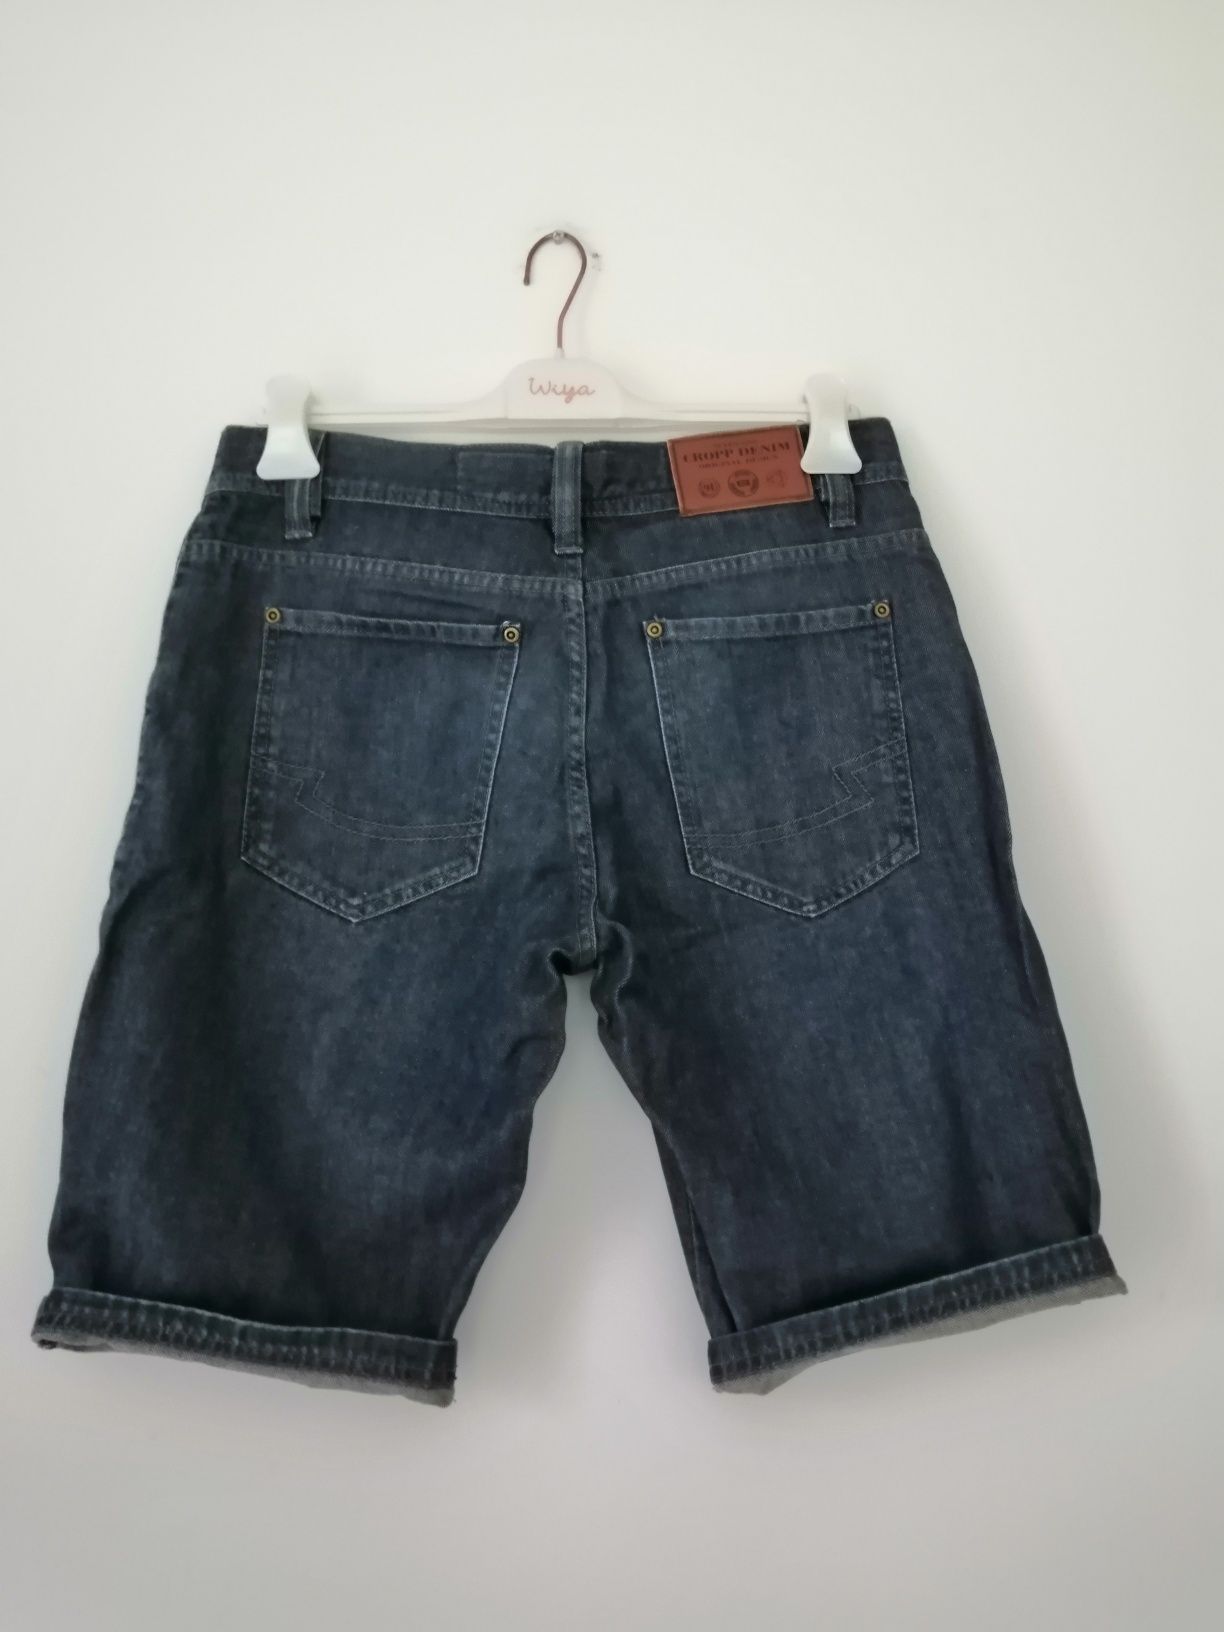 Granatowe męskie jeansowe spodenki do kolan bawełna Cropp, rozmiar 30